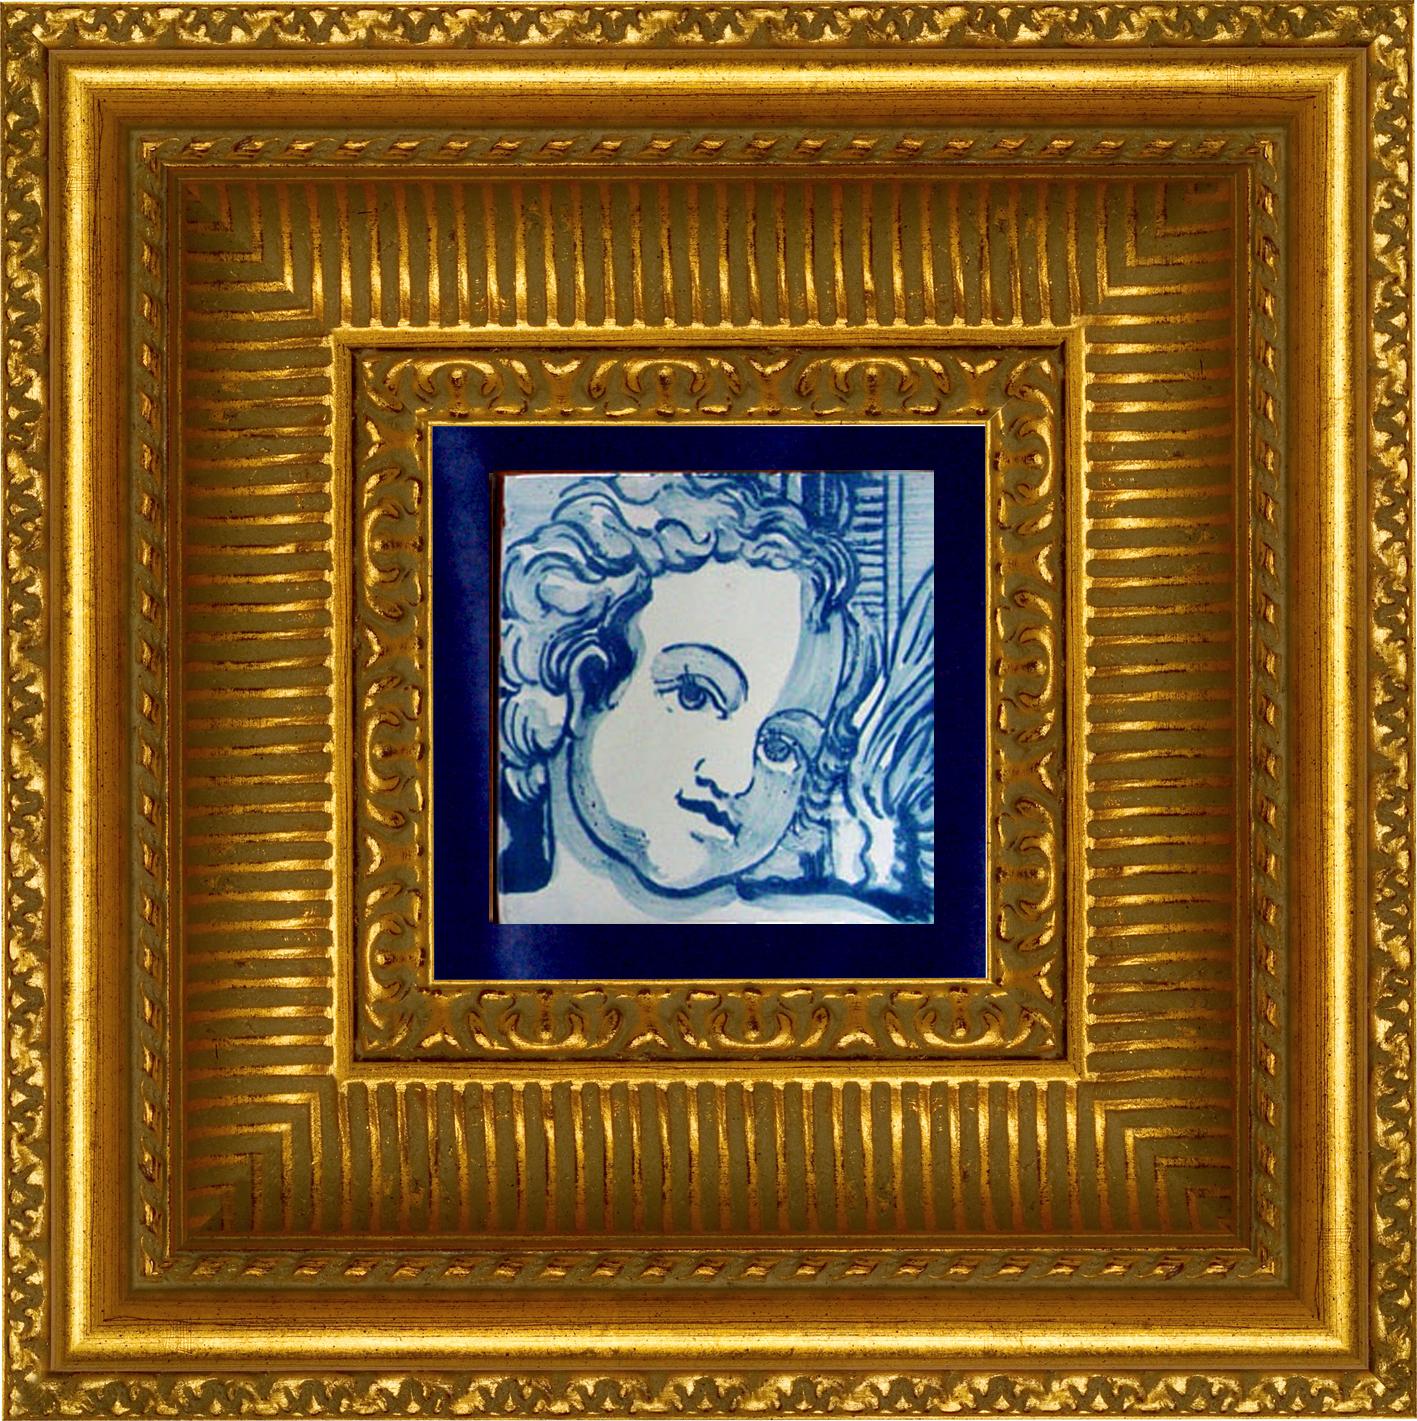 Wunderschöne blaue handbemalte barocke Cherub oder Engel 18. Jahrhundert Stil portugiesische Keramikfliese oder azulejo
Diese in Blau auf Weiß gemalte Fliese aus dem typischen Portugal des 18. Jahrhunderts begründete den Geschmack für monumentale